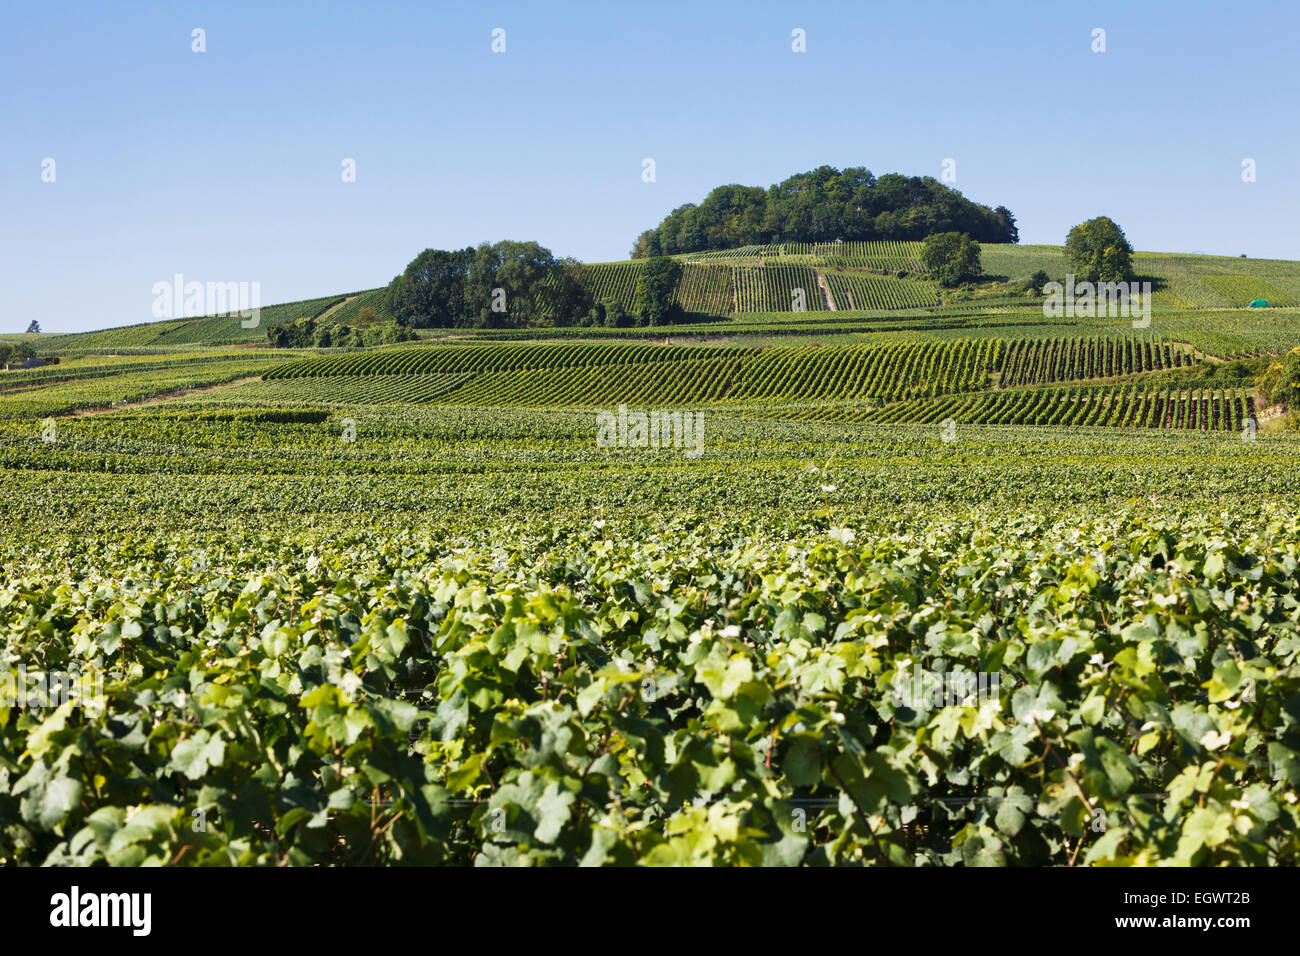 Domaines de vignes de Champagne près de Villedommange village, route du Champagne route touristique, France Banque D'Images